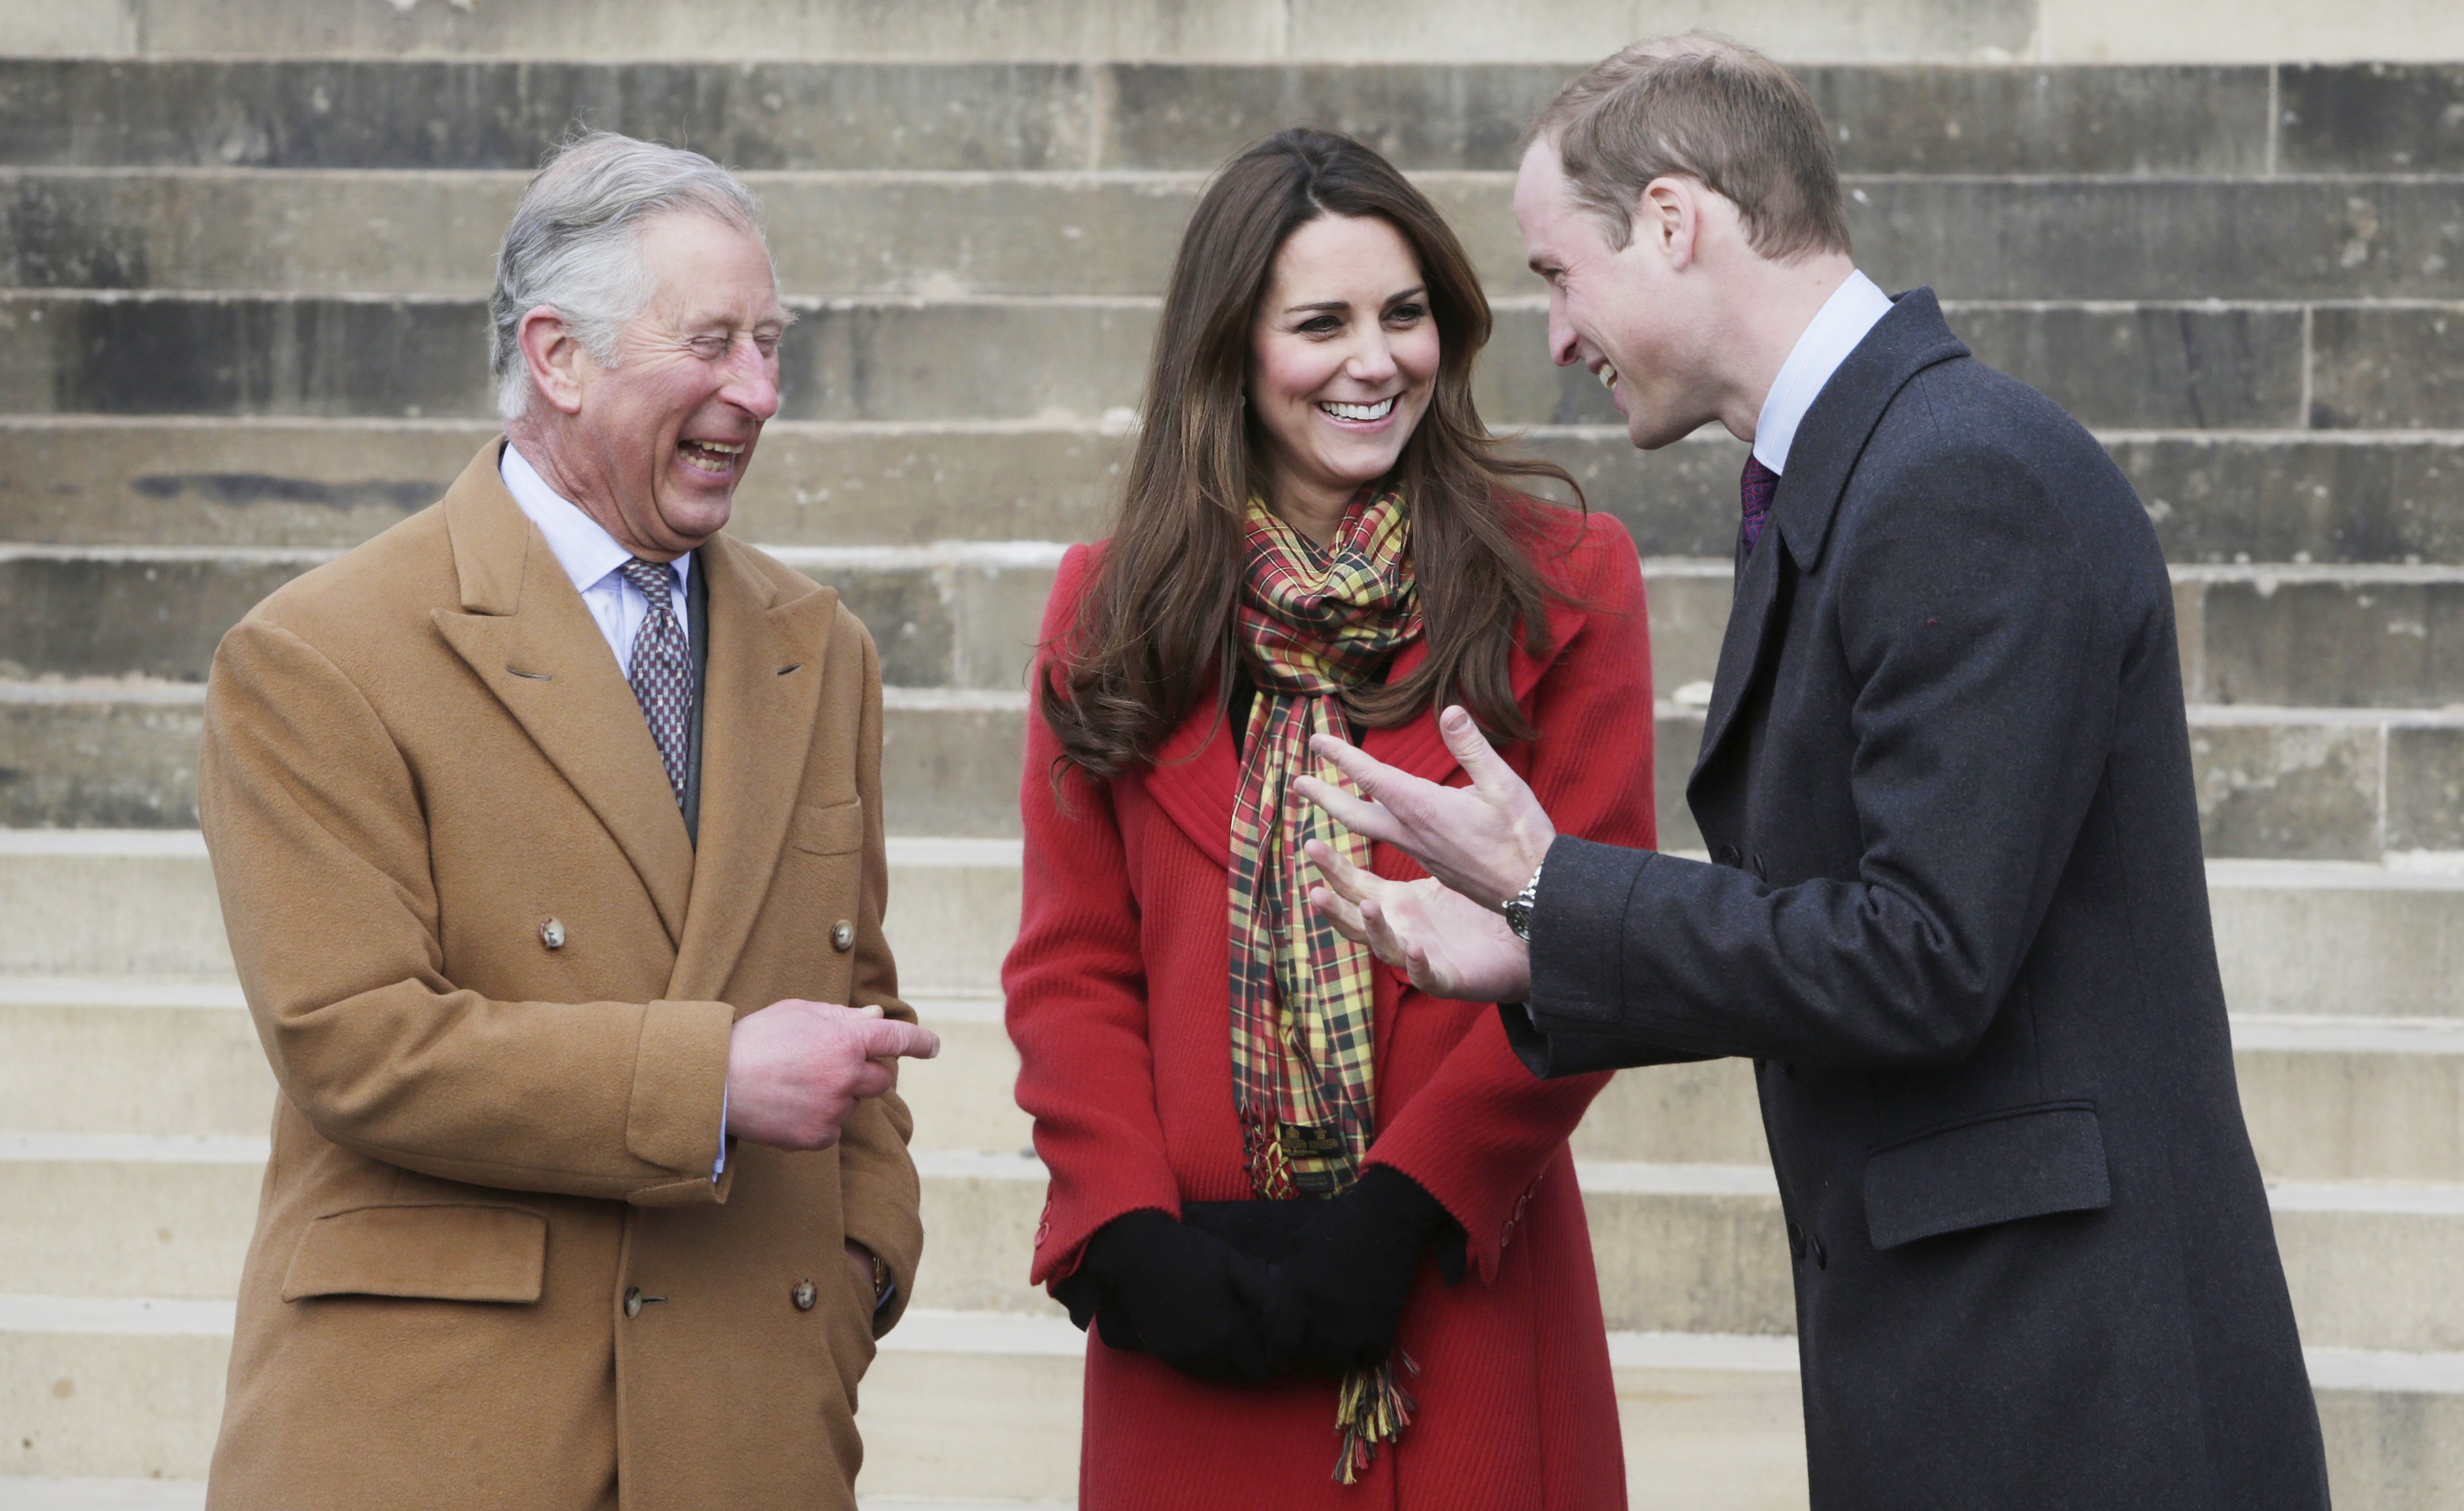 El rey Charles III, el príncipe William y Kate Middleton en Ayrshire, Escocia, en 2013. | Foto: Getty Images